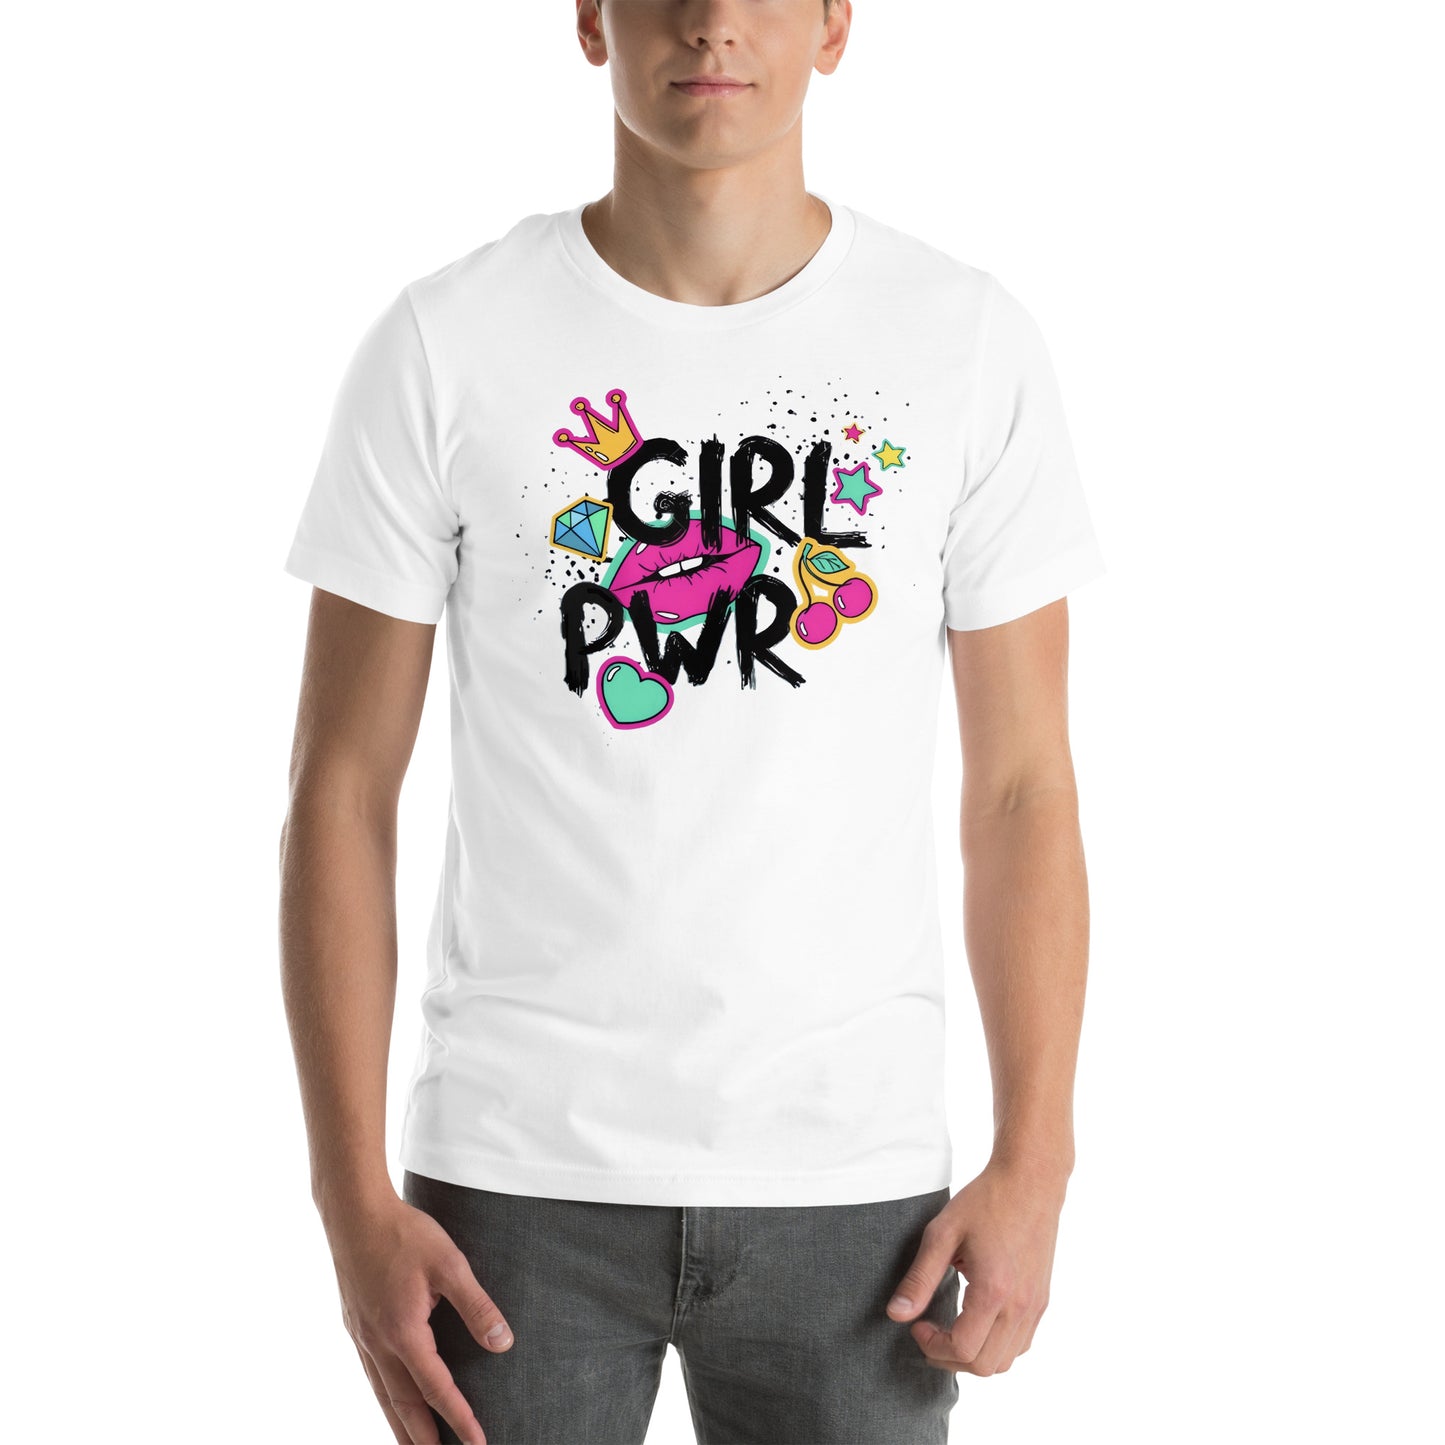 Playera de Girl Pwr, Descubre calidad excepcional y estampados duraderos. Encuentra estilo y orgullo en cada prenda. Compre en LOSMIOS!